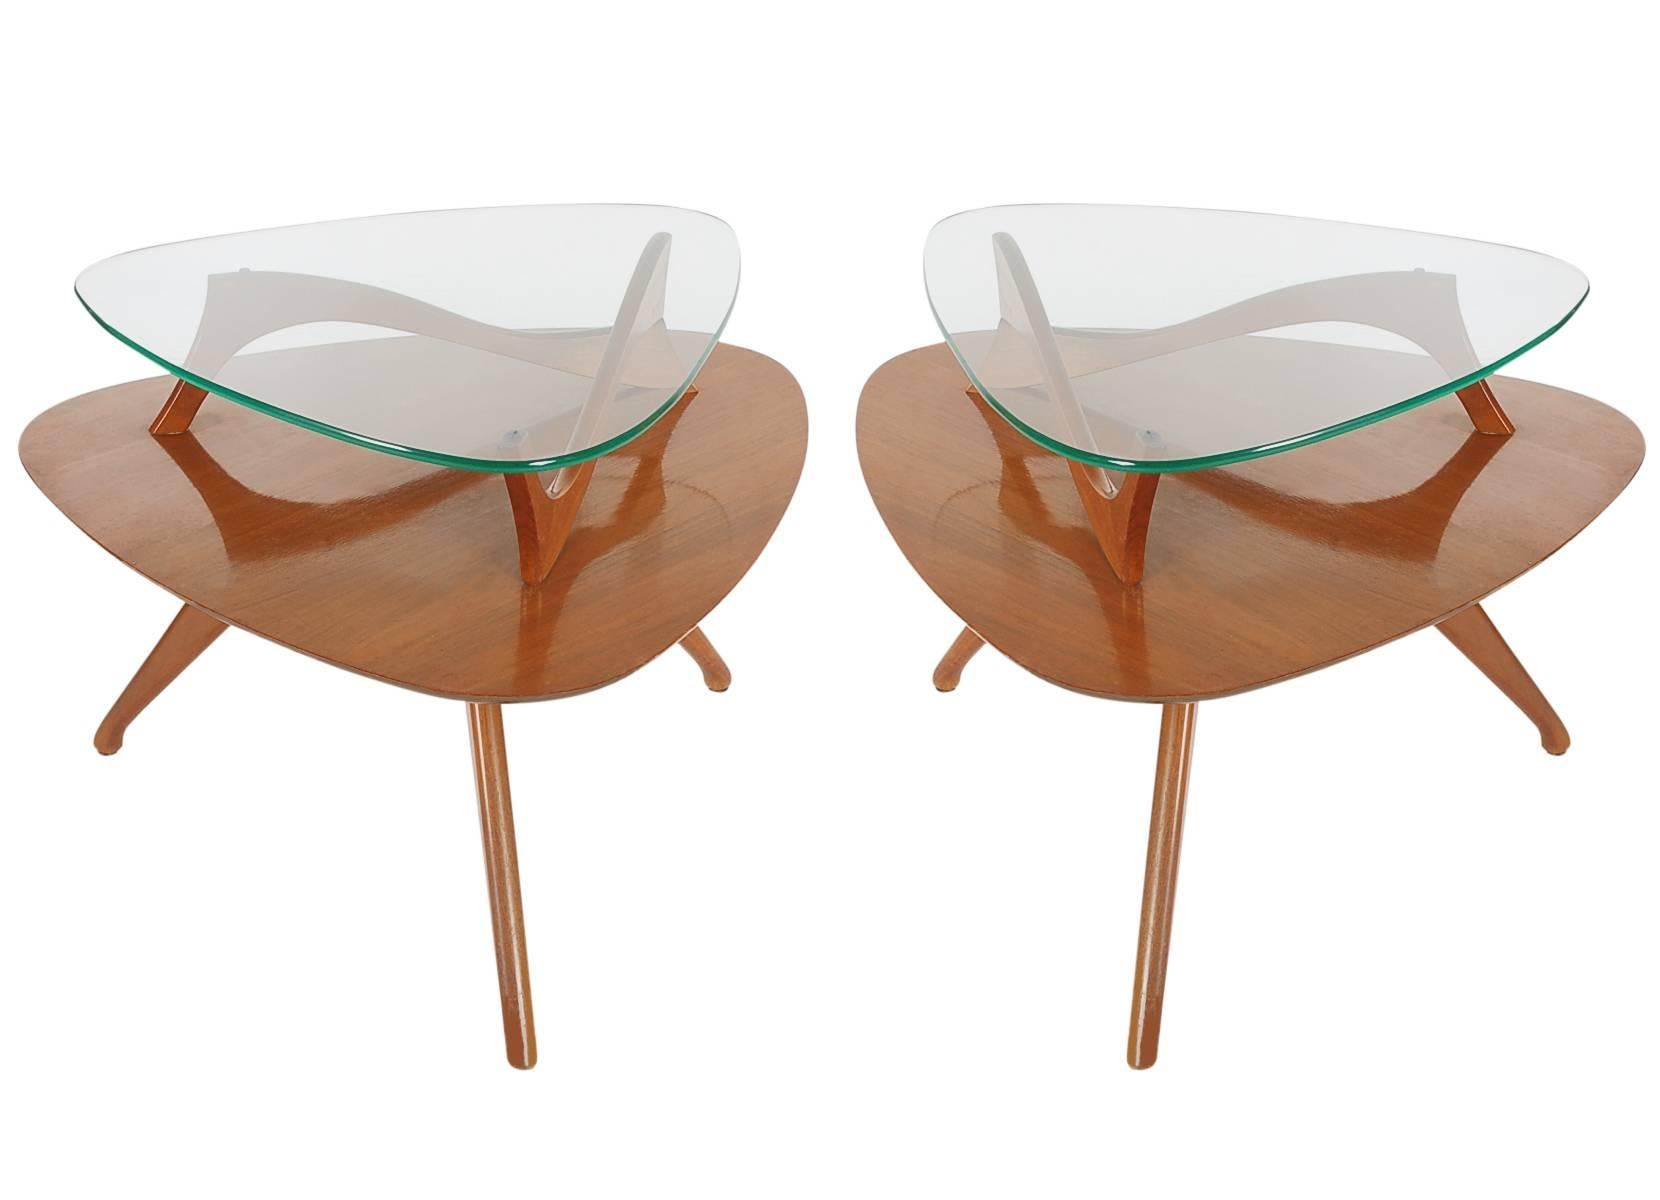 Une paire inhabituelle de tables d'appoint à deux niveaux datant des années 1960. Ils sont construits en noyer avec des plateaux en verre flottant. 

Dans le style de : Adrian Pearsall, Gio Ponti